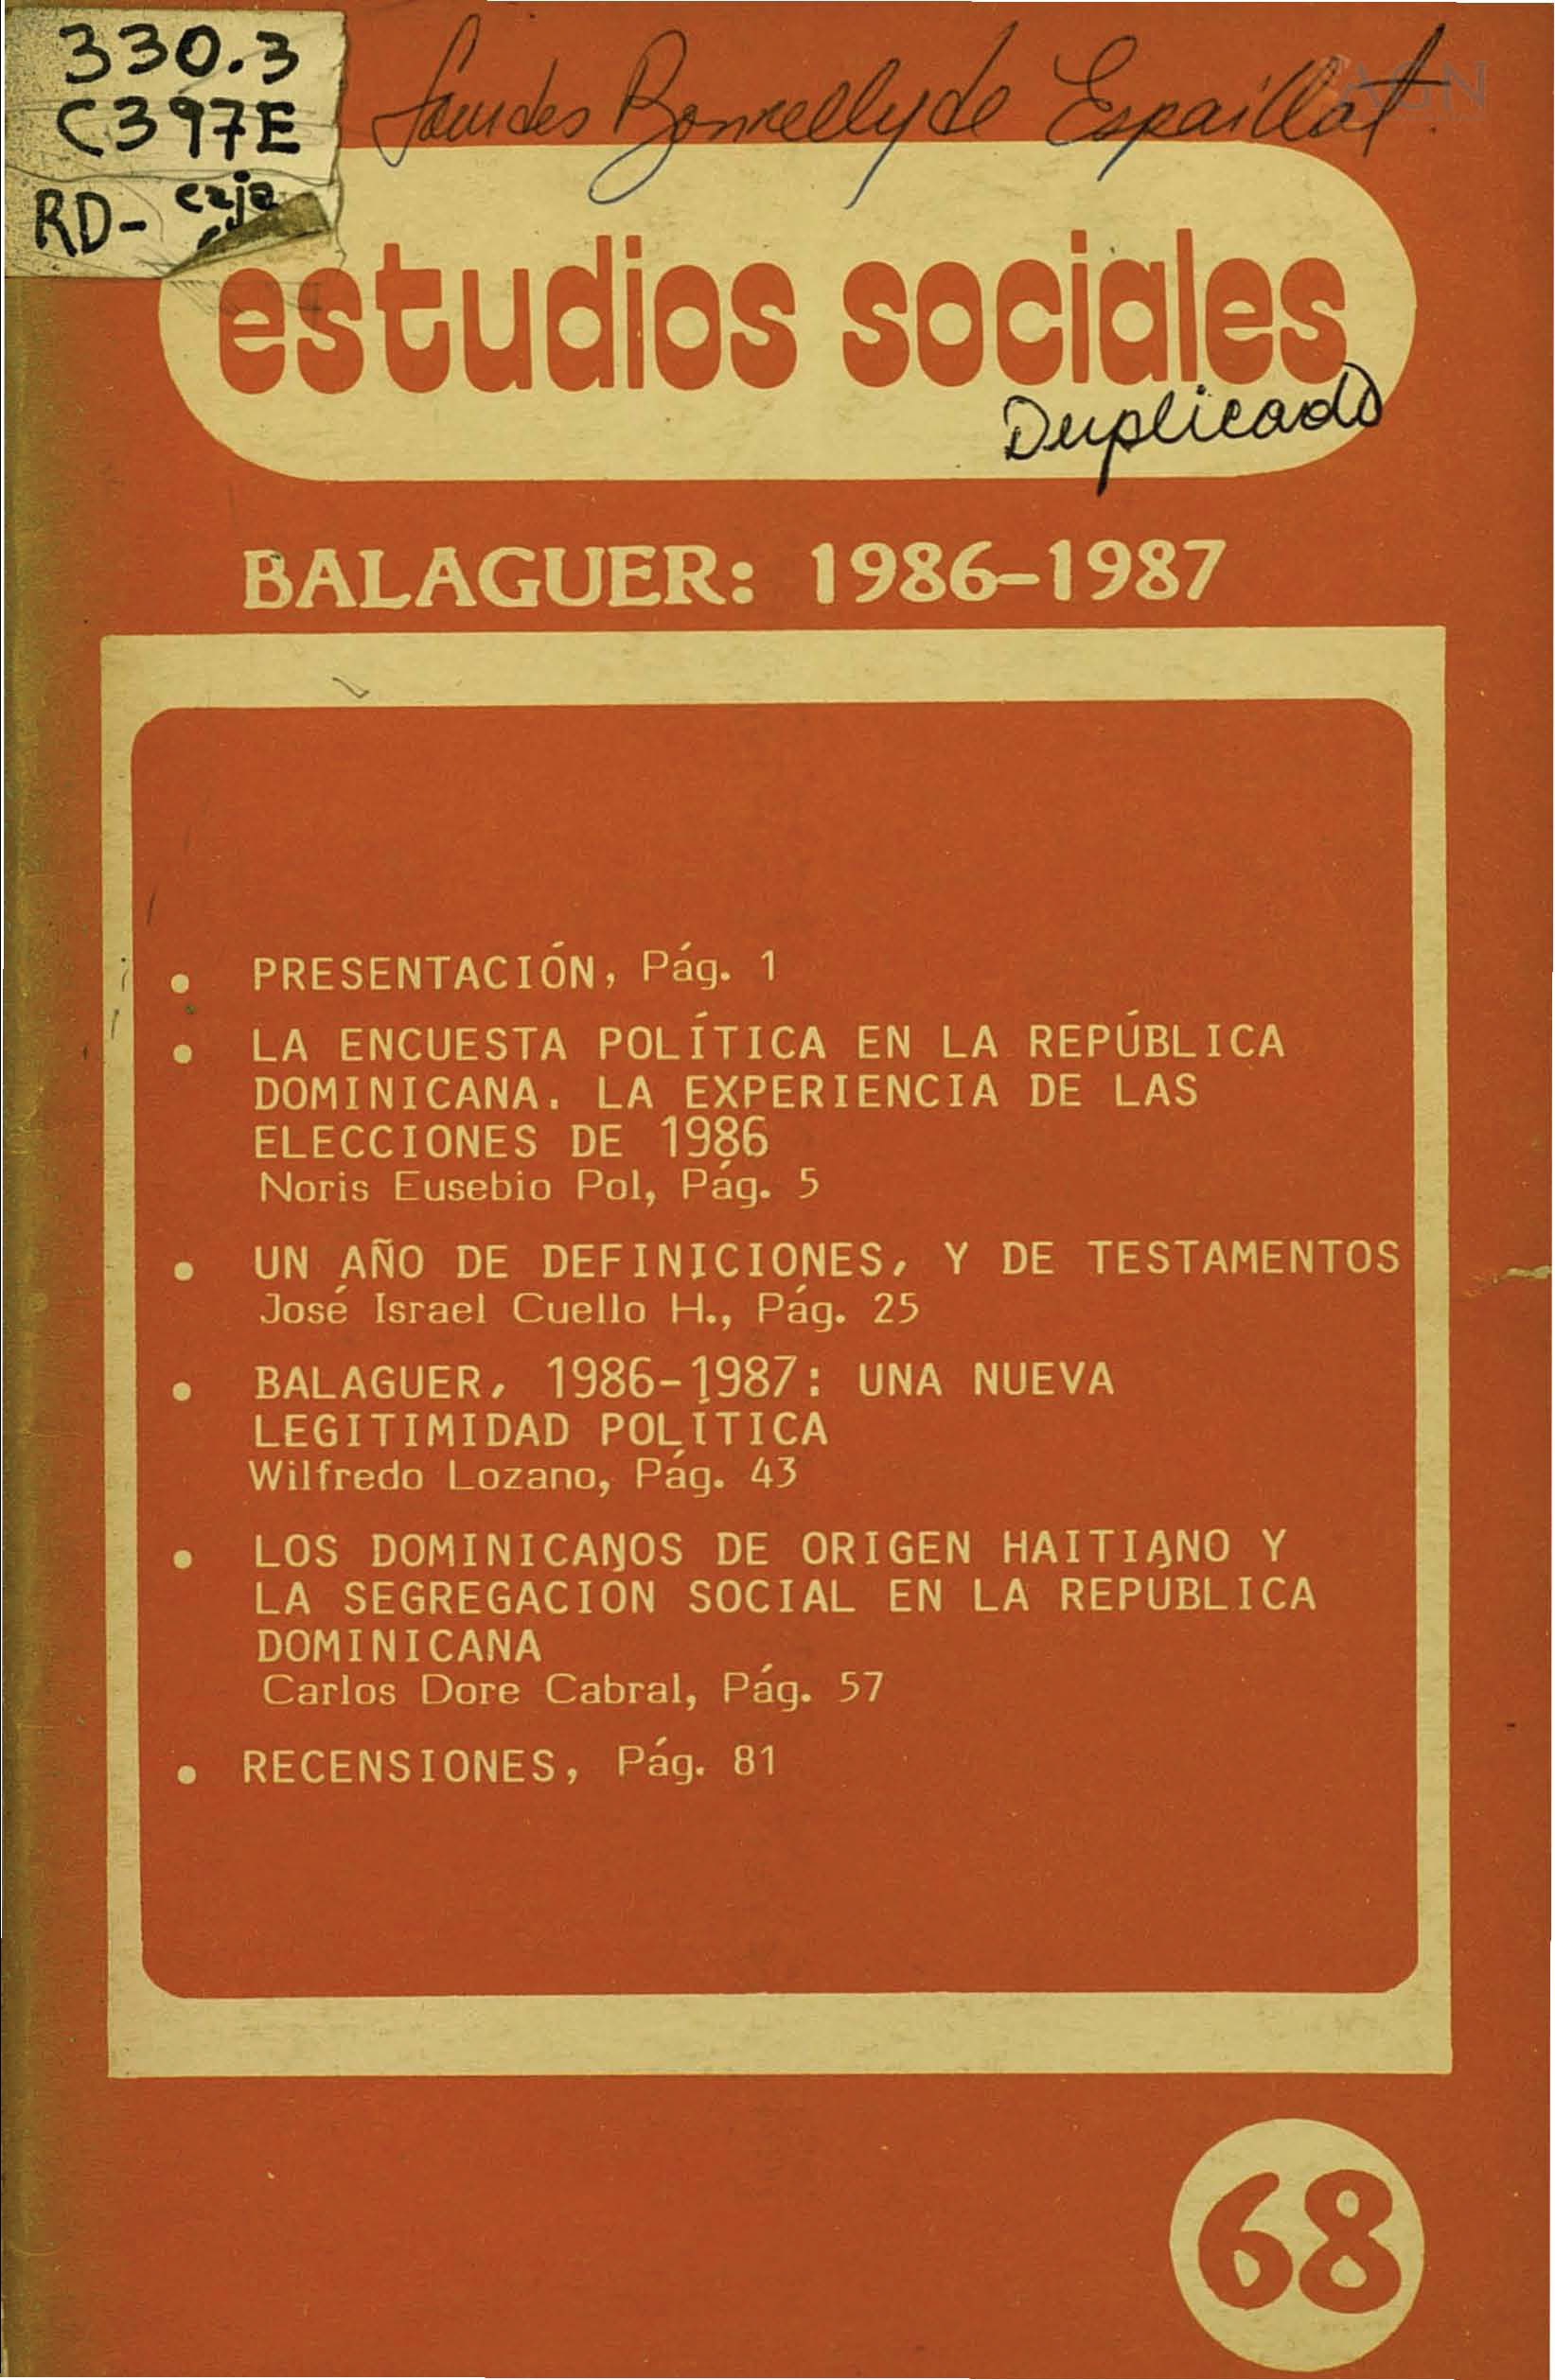 						Afficher Vol. 20 No 68 (1987): Balaguer: 1986-1987
					